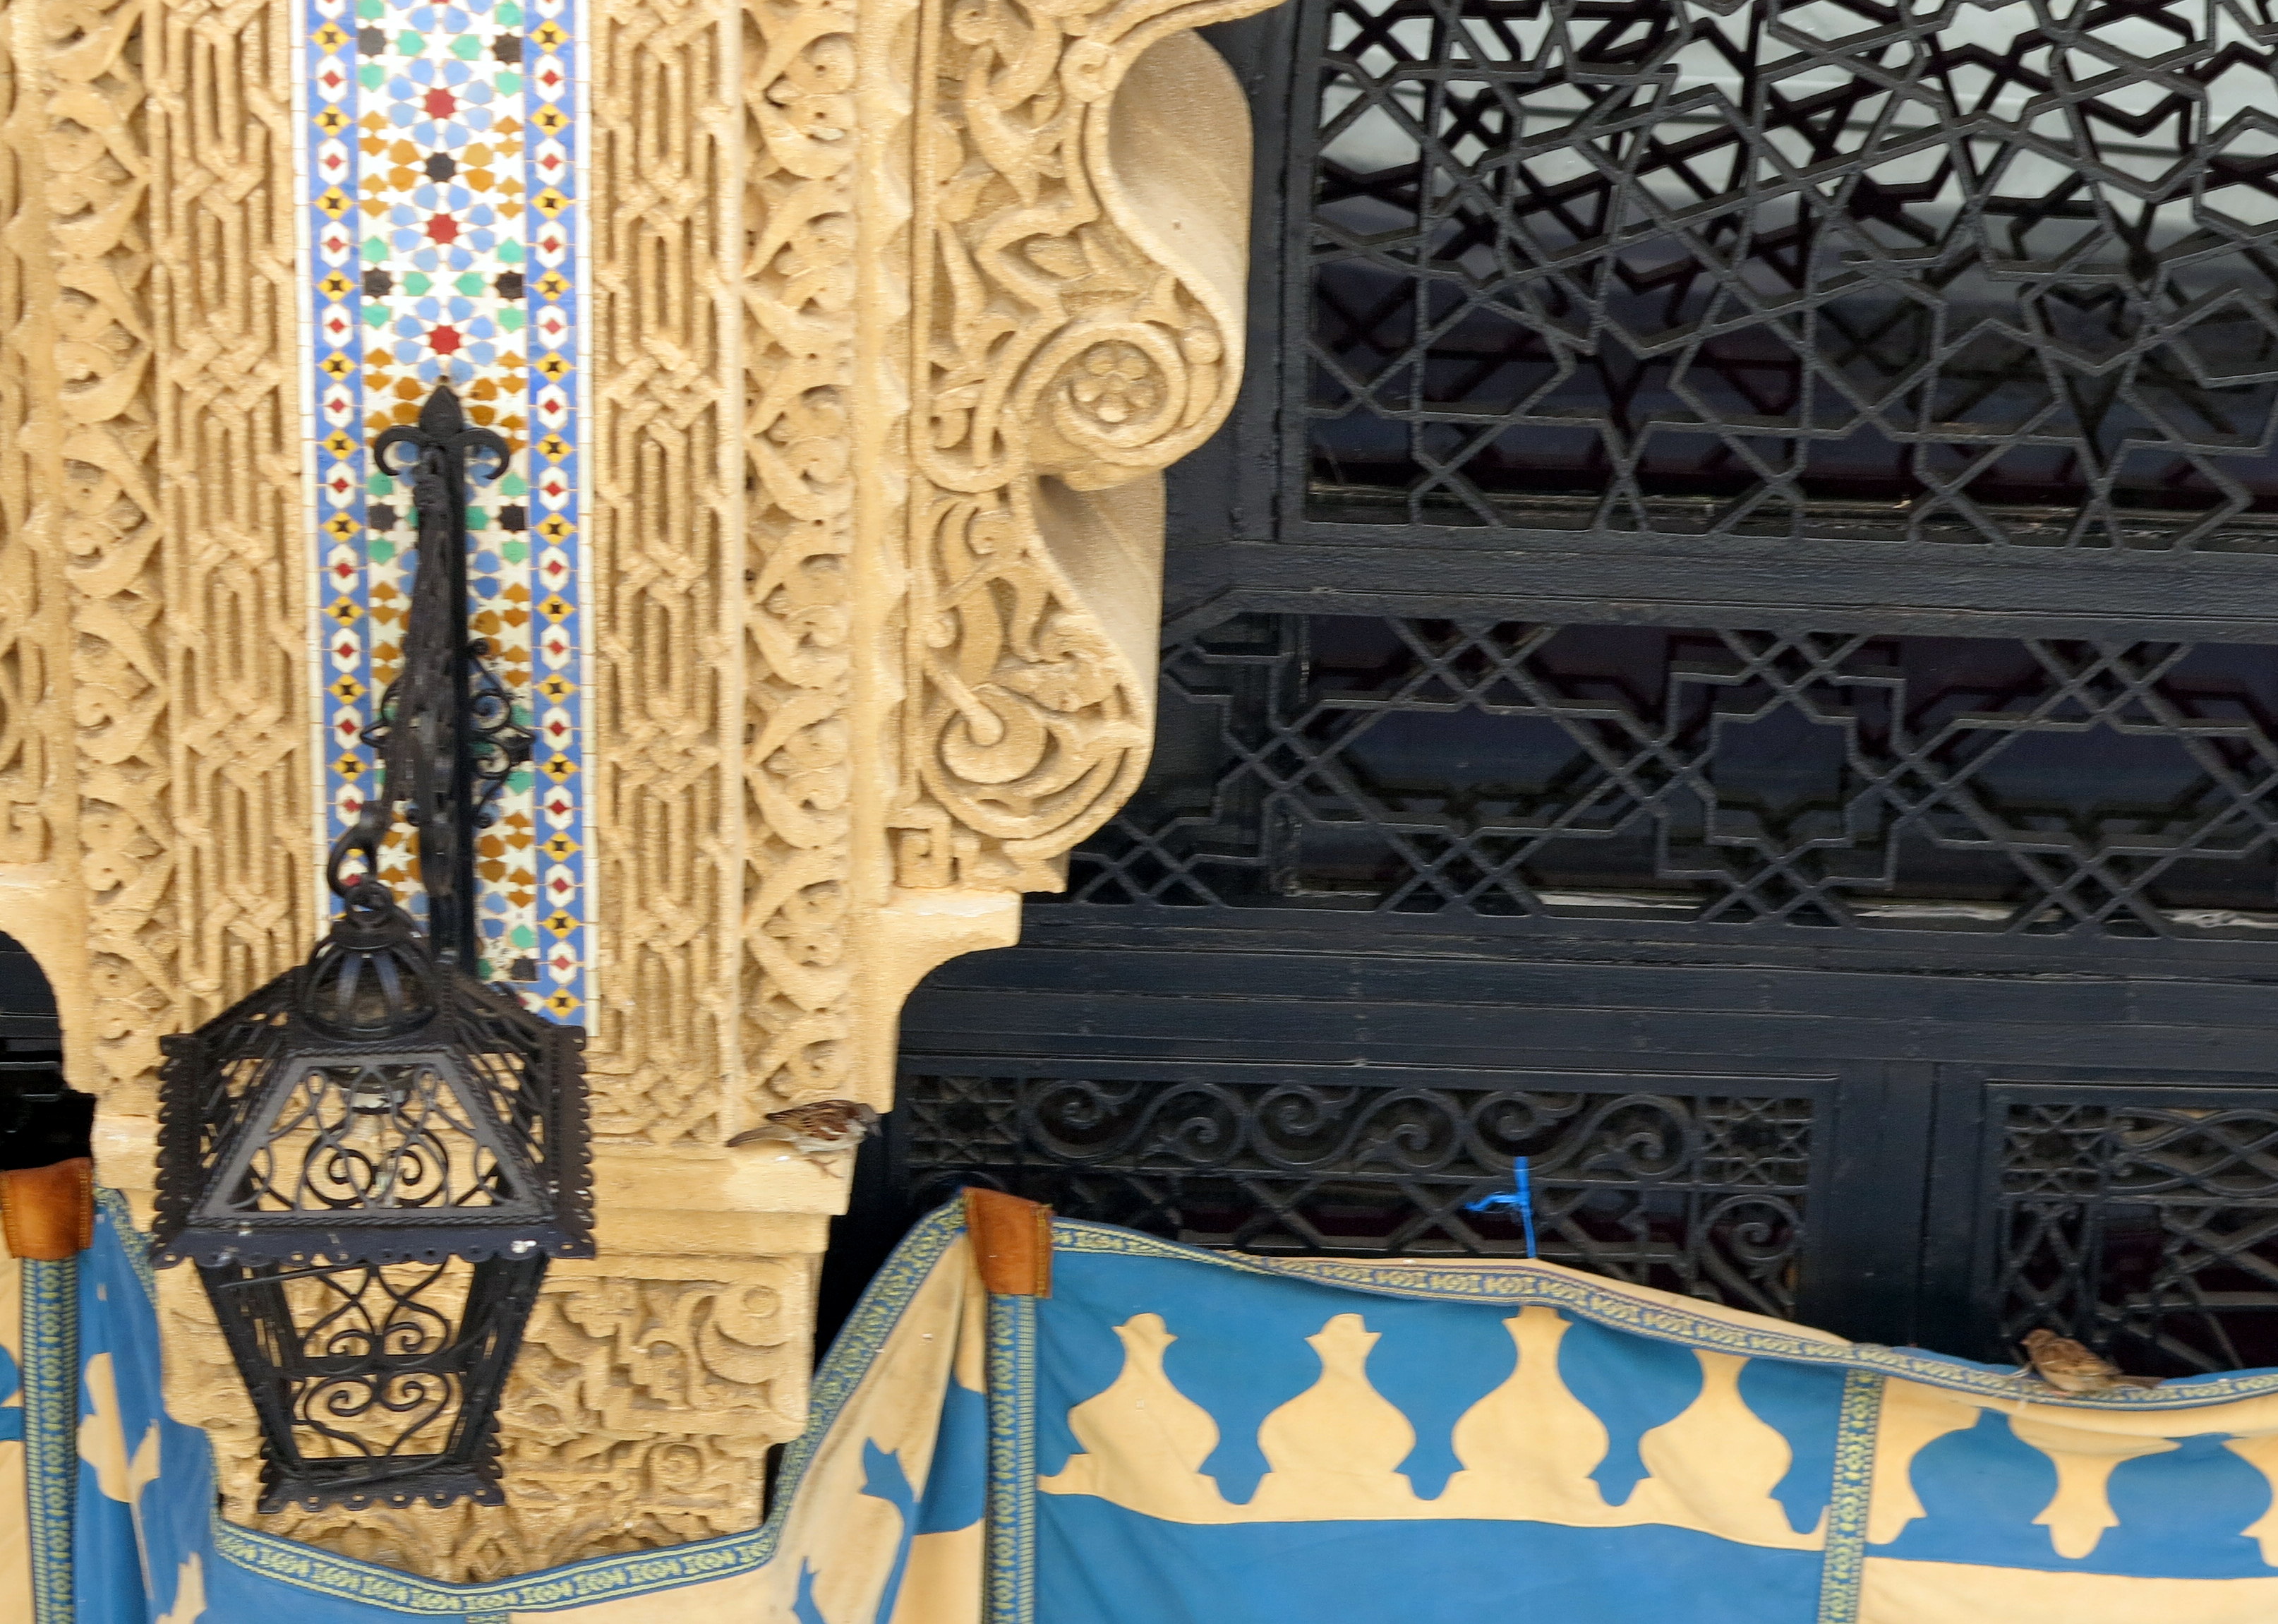 Birds and Lantern outside Mohammed V Tomb